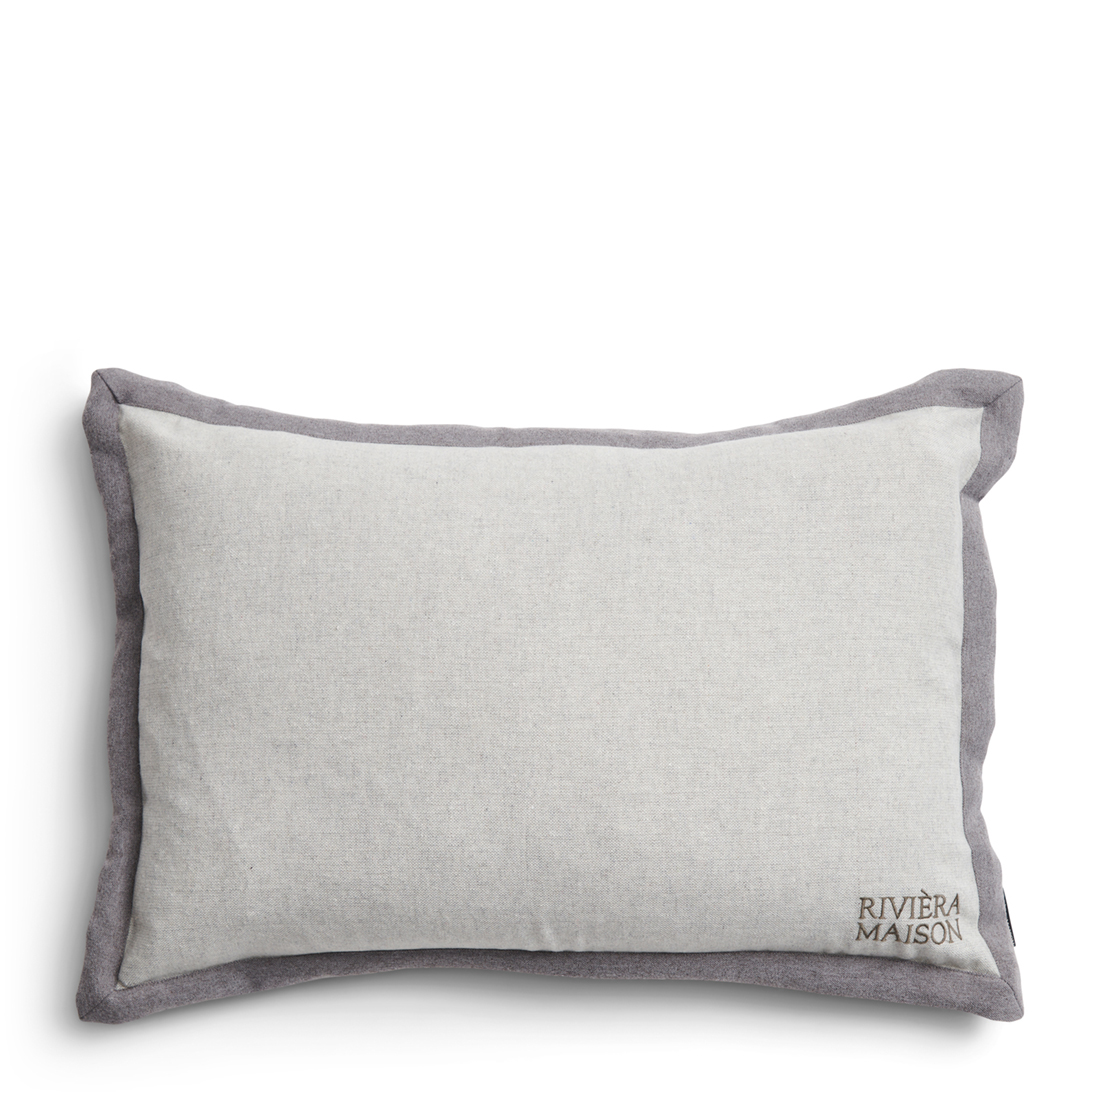 Riviera Maison Kussenhoes 65x45 - RM Flori Pillow Cover - Grijs - 65x45 cm